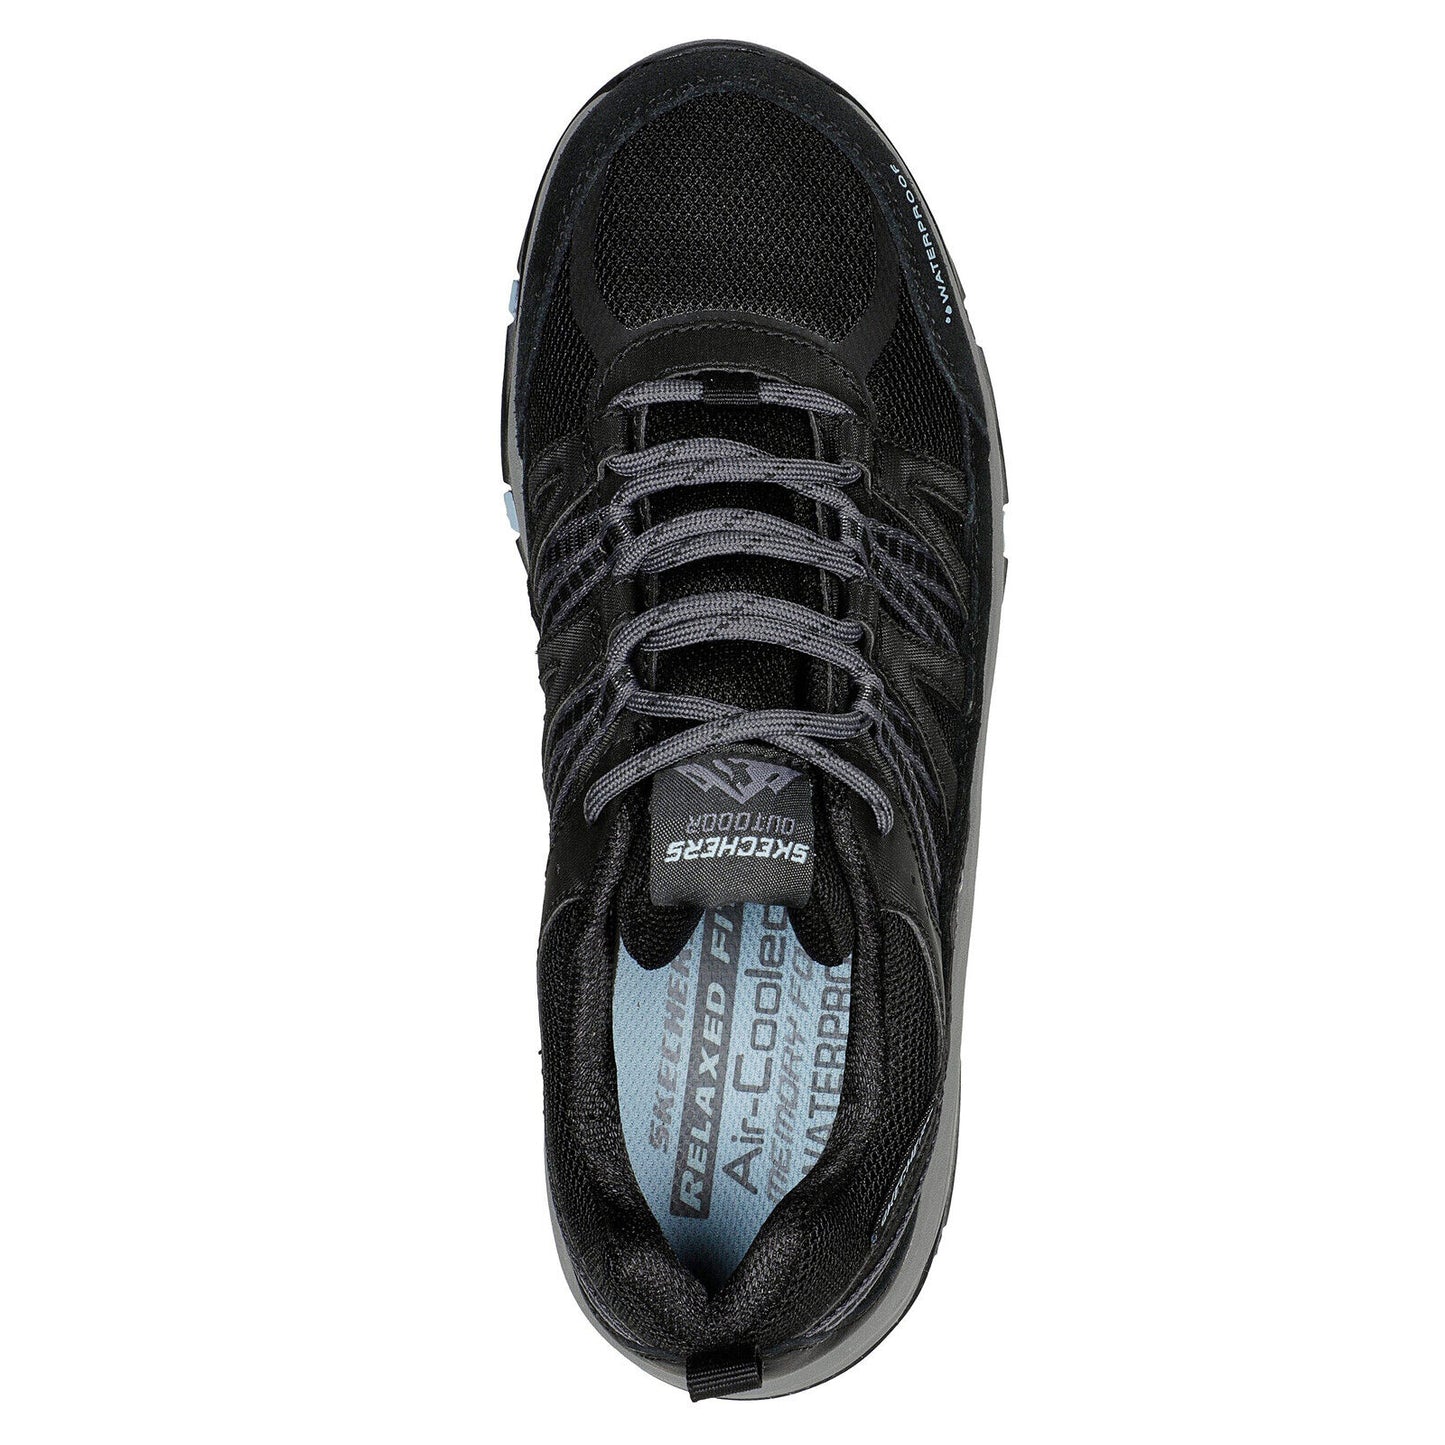 Skechers Ladies Trego Lookout Point Black/Blue Waterproof Walking Shoes